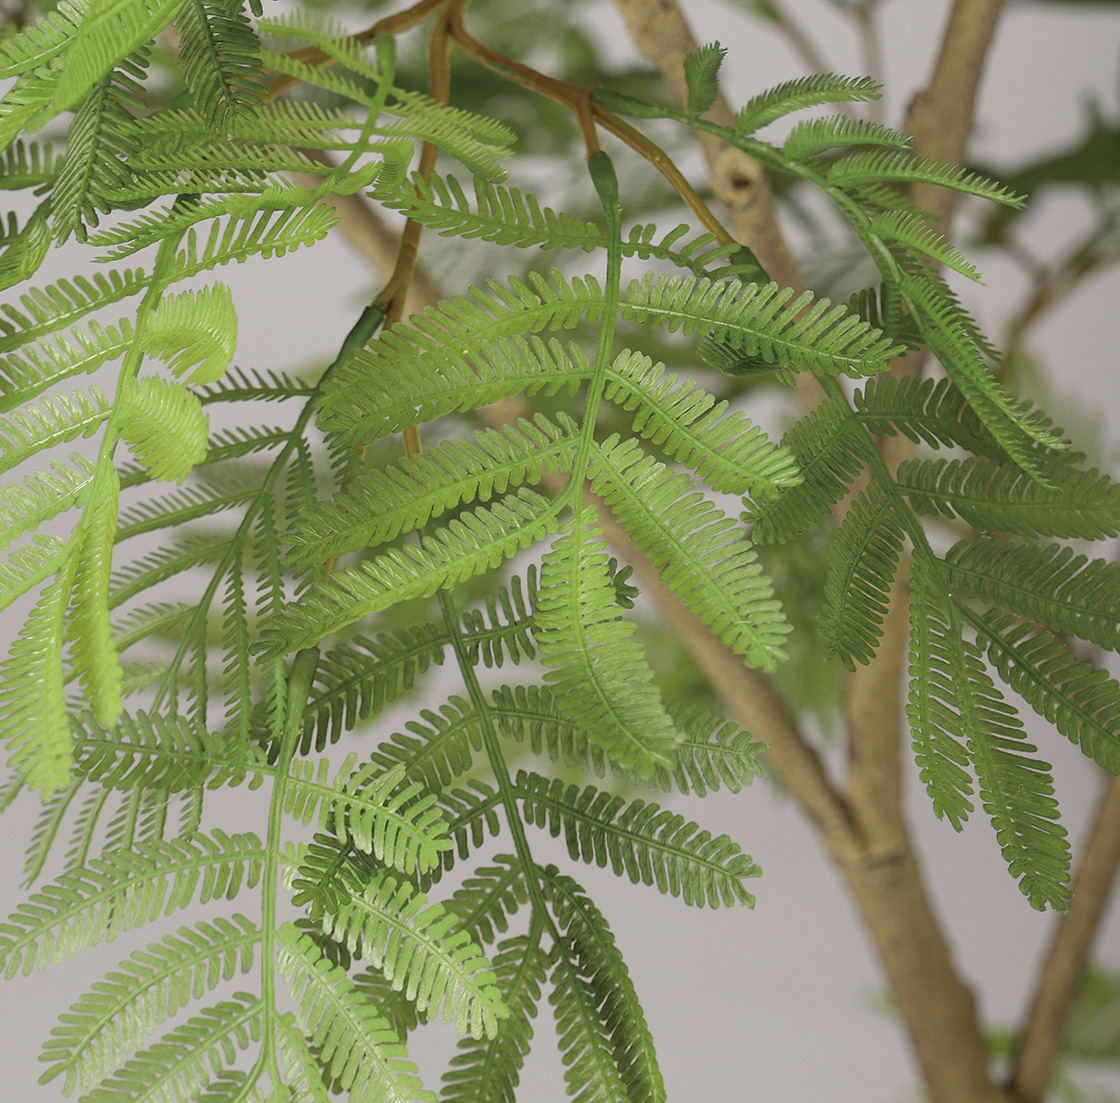 W60 × D60 × H120cmしなやかで繊細なスタイルが魅力のエバーフレッシュ。絶妙なバランスとボリューム感で葉を配置することで無造作な樹木本来の姿をダイレクトに表現。